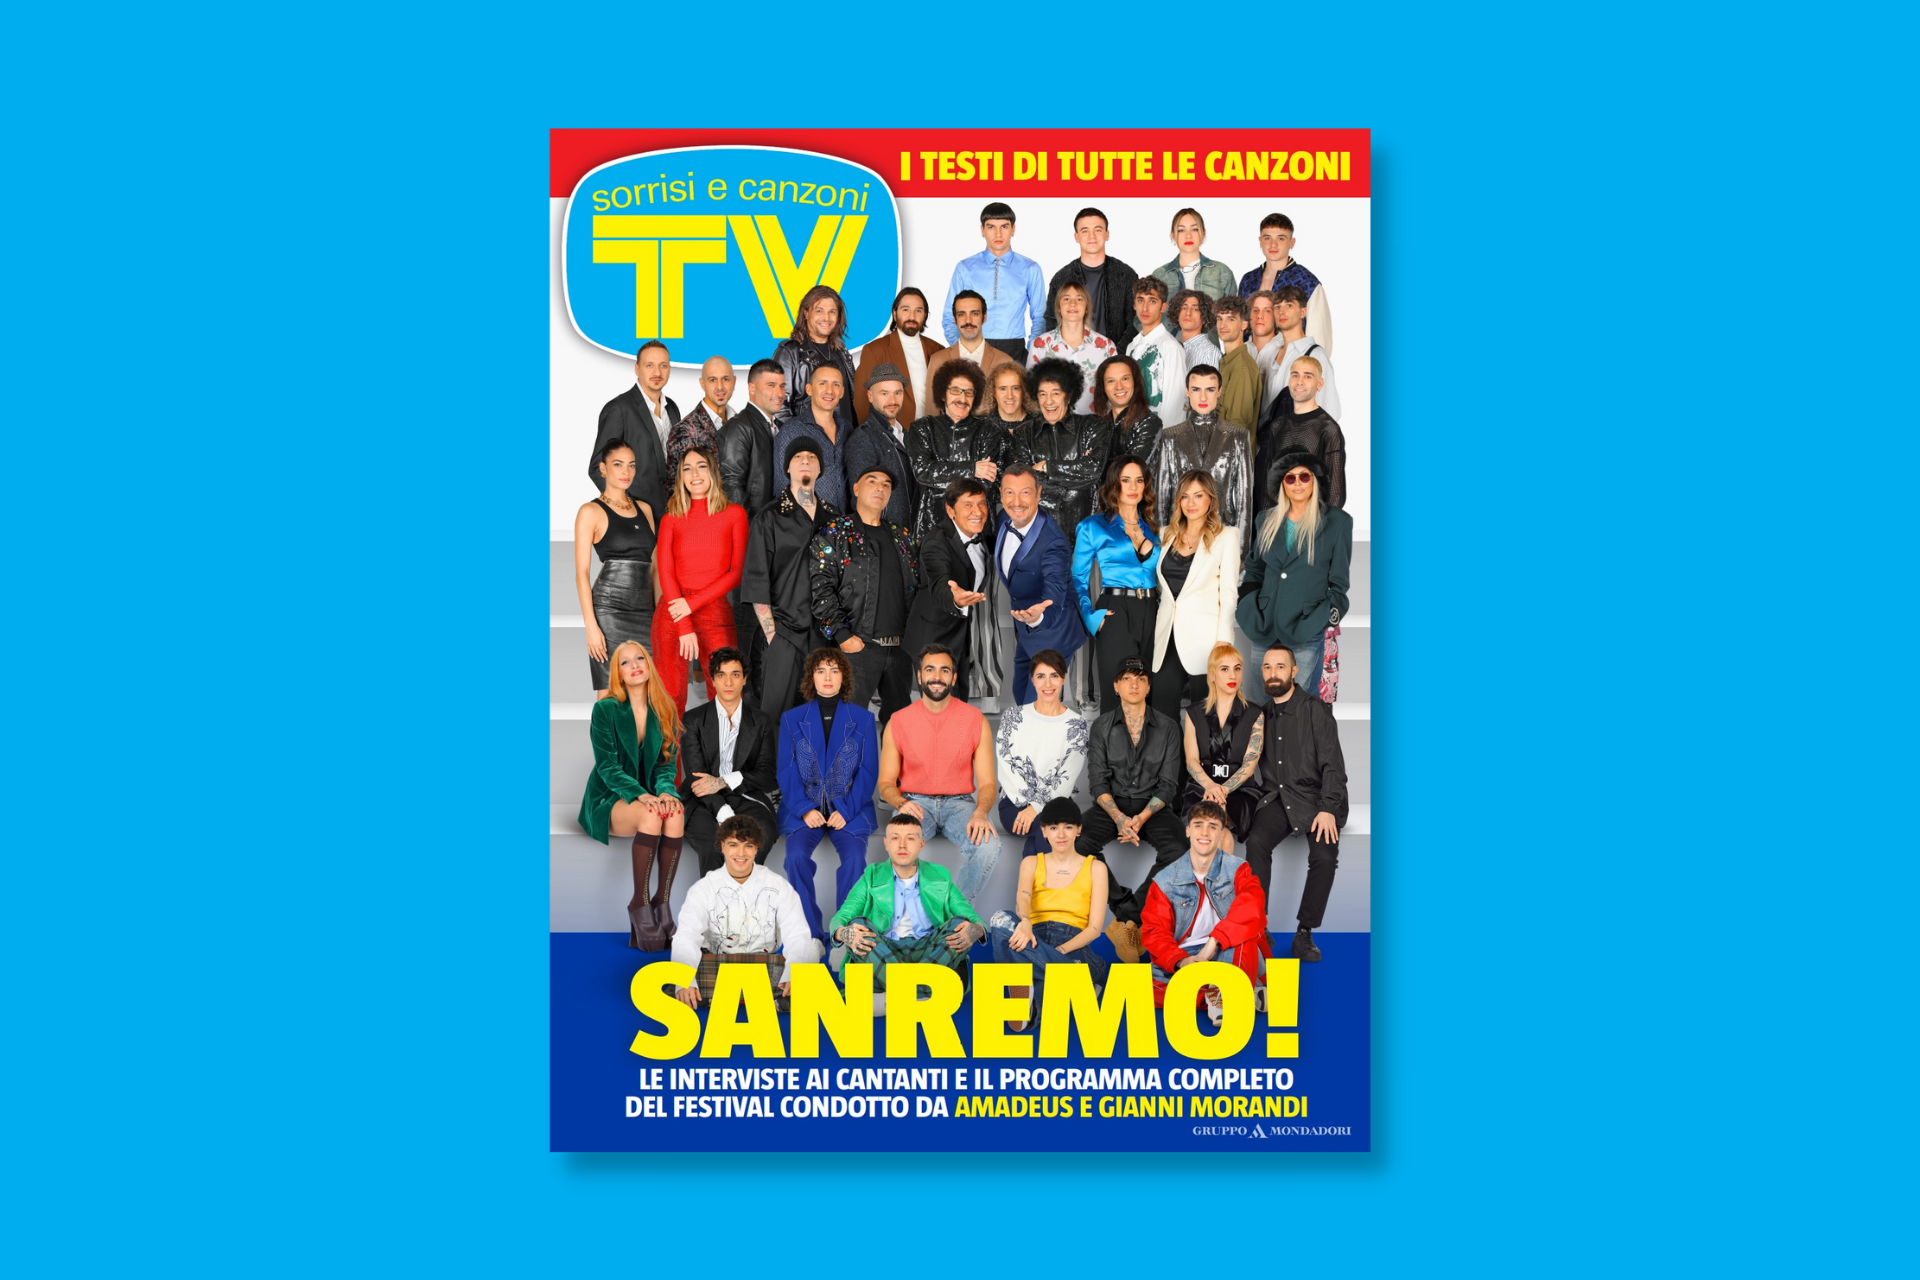 Tv Sorrisi e Canzoni will be a protagonist of the Sanremo Festival Gruppo Mondadori